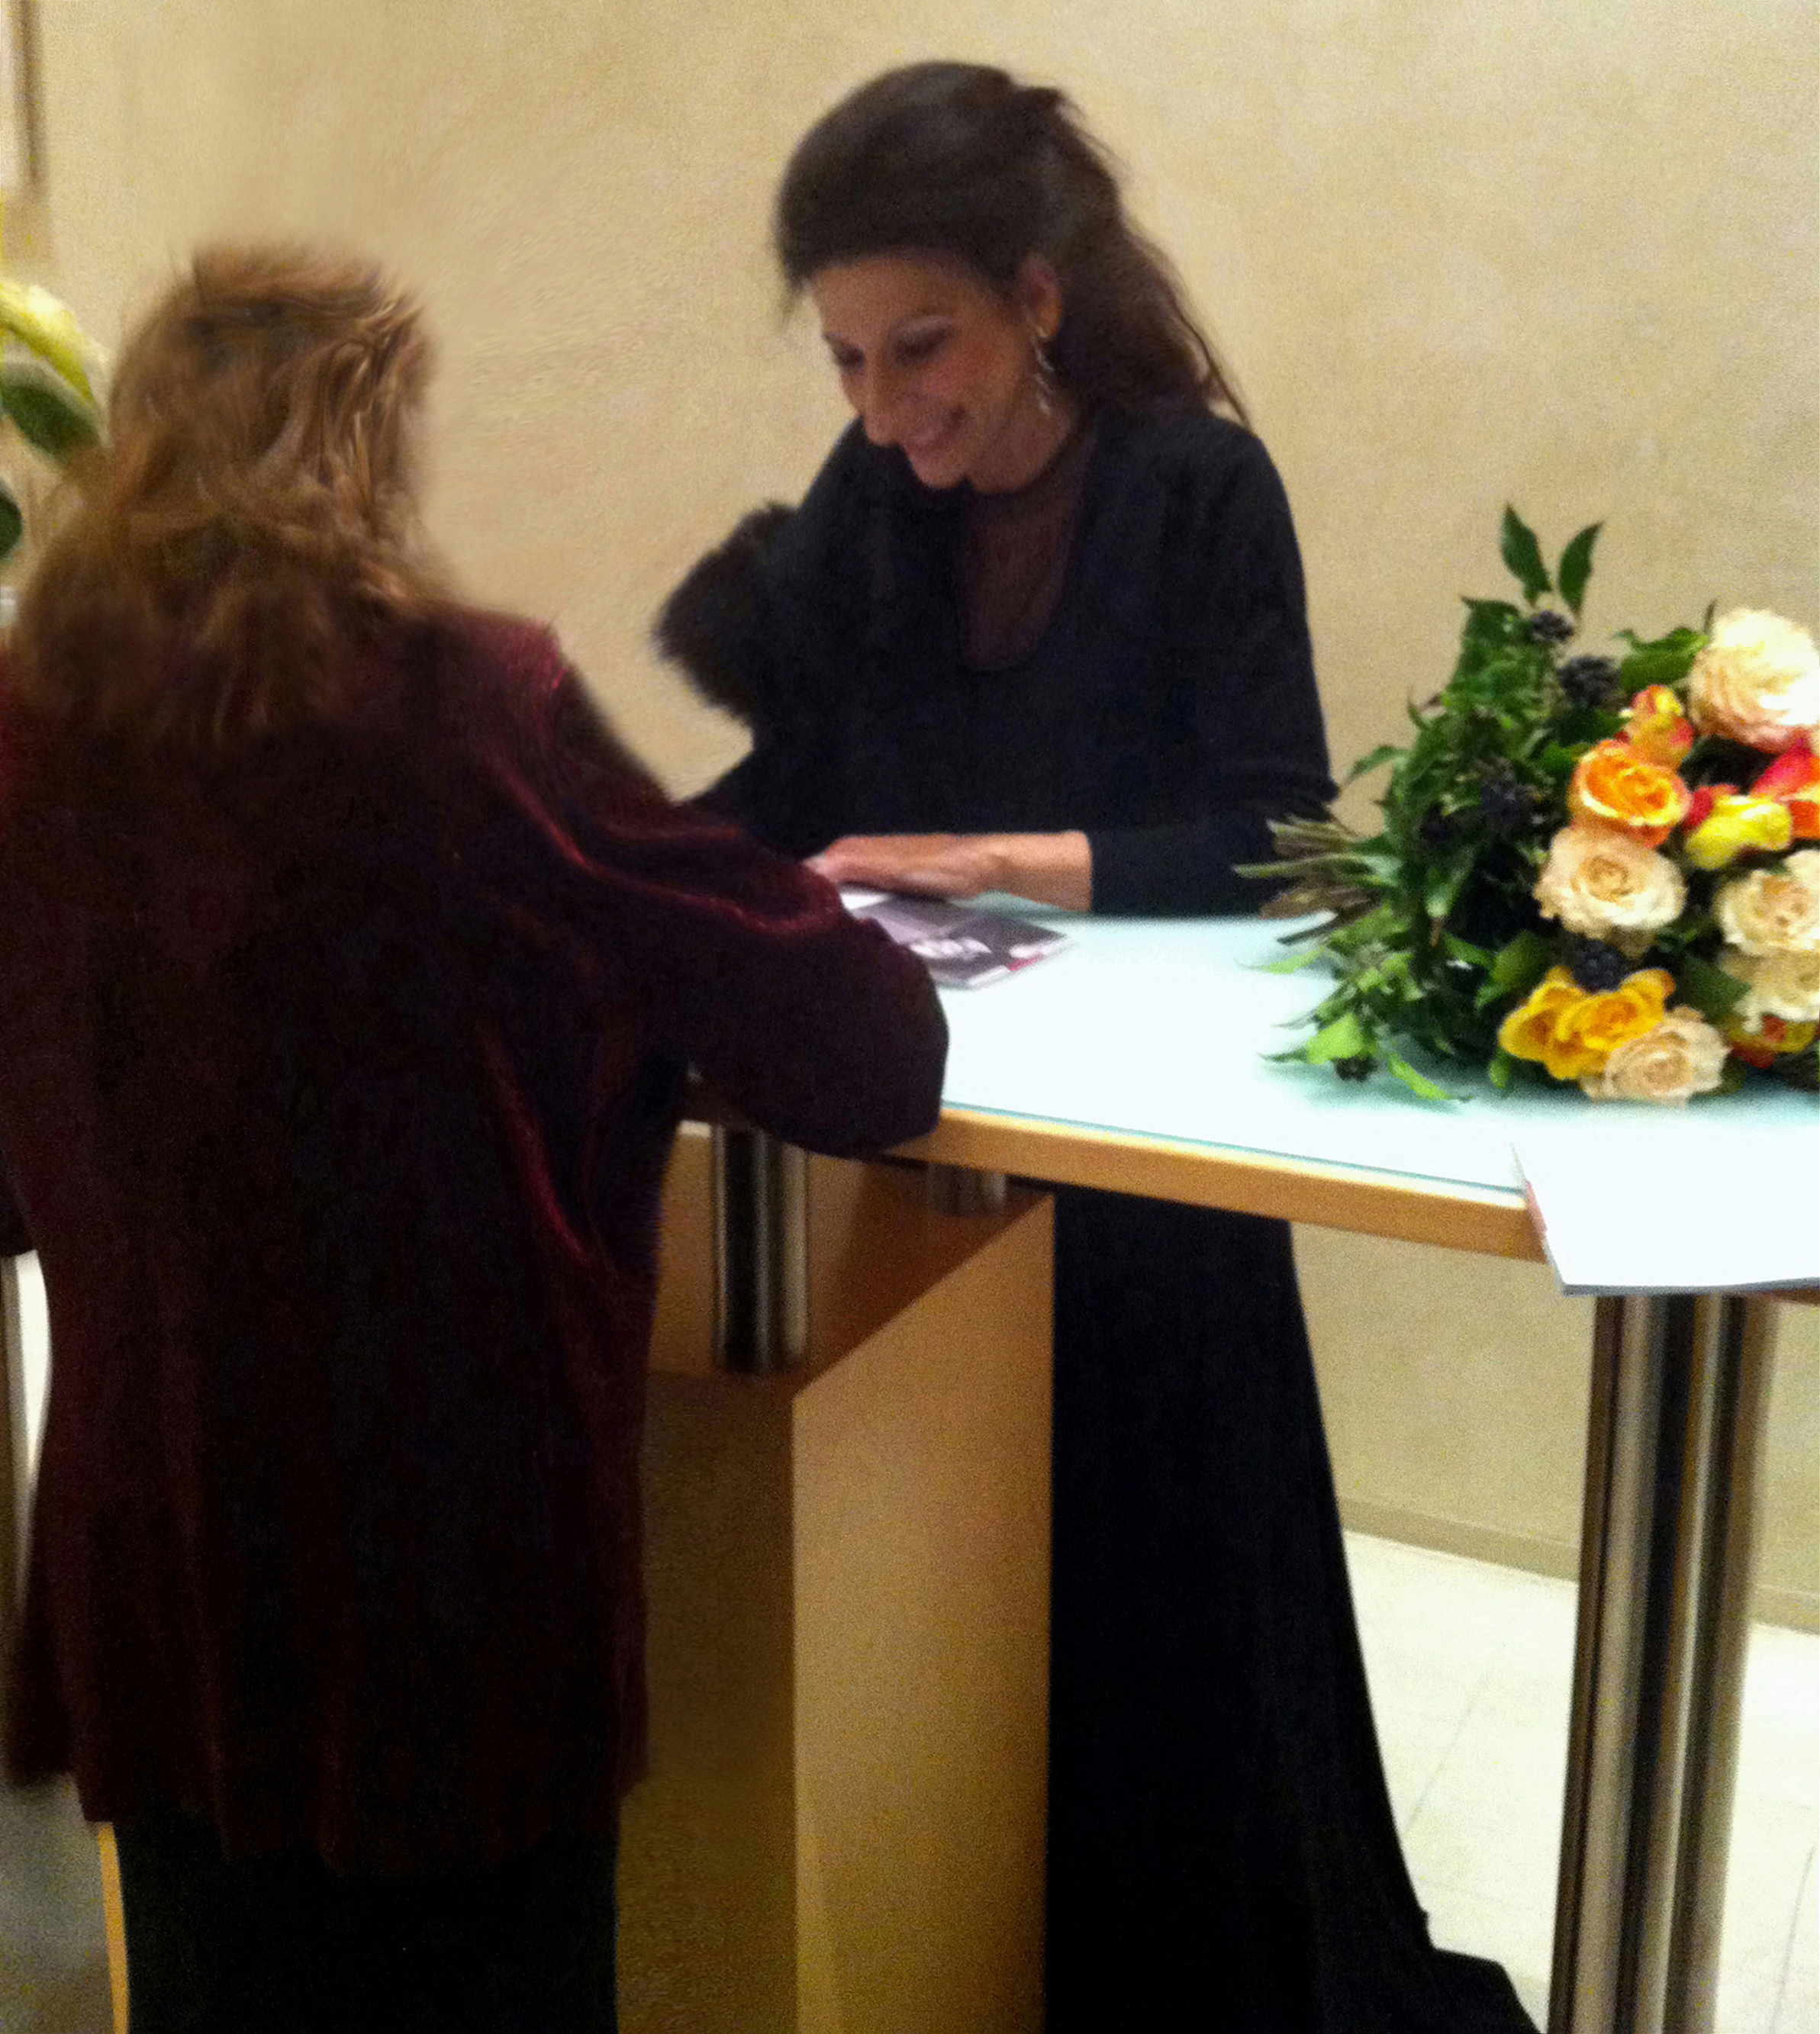 Lucia Aliberti⚘Concert Gebouw⚘Amsterdam⚘Concert⚘Autograph Session⚘Lucia thanks the Fans⚘La Perla Fashion⚘:http://www.luciaaliberti.it #luciaaliberti #concertgebouw #amsterdam #concert #autographsession #fans #laperlafashion